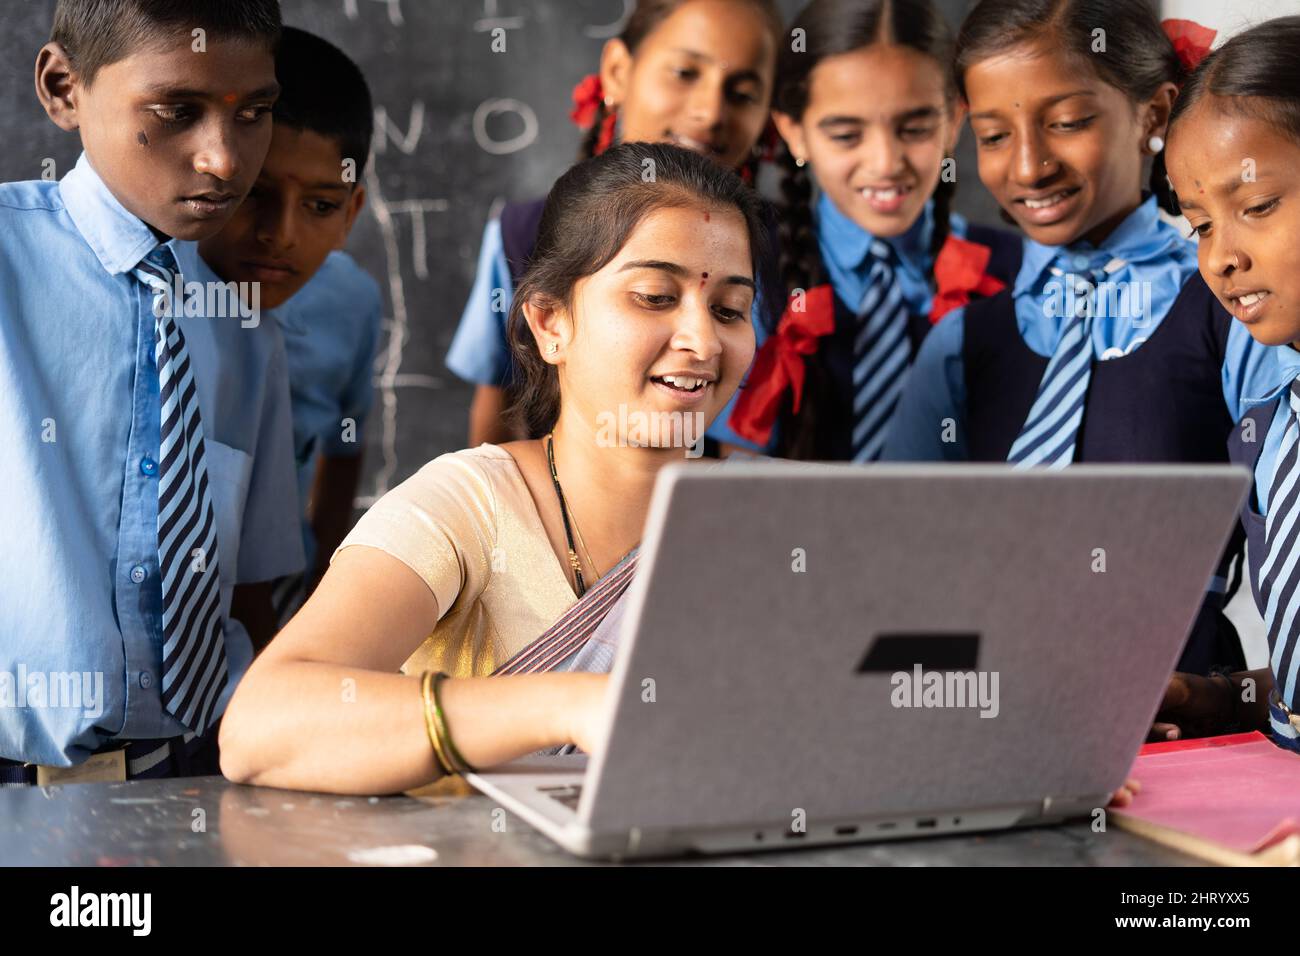 Junge indische Lehrerin, die mit Schuluniformstudenten im Klassenzimmer auf einem Laptop unterrichtet - Konzept der Entwicklung, Technologie und digitalen Bildung Stockfoto